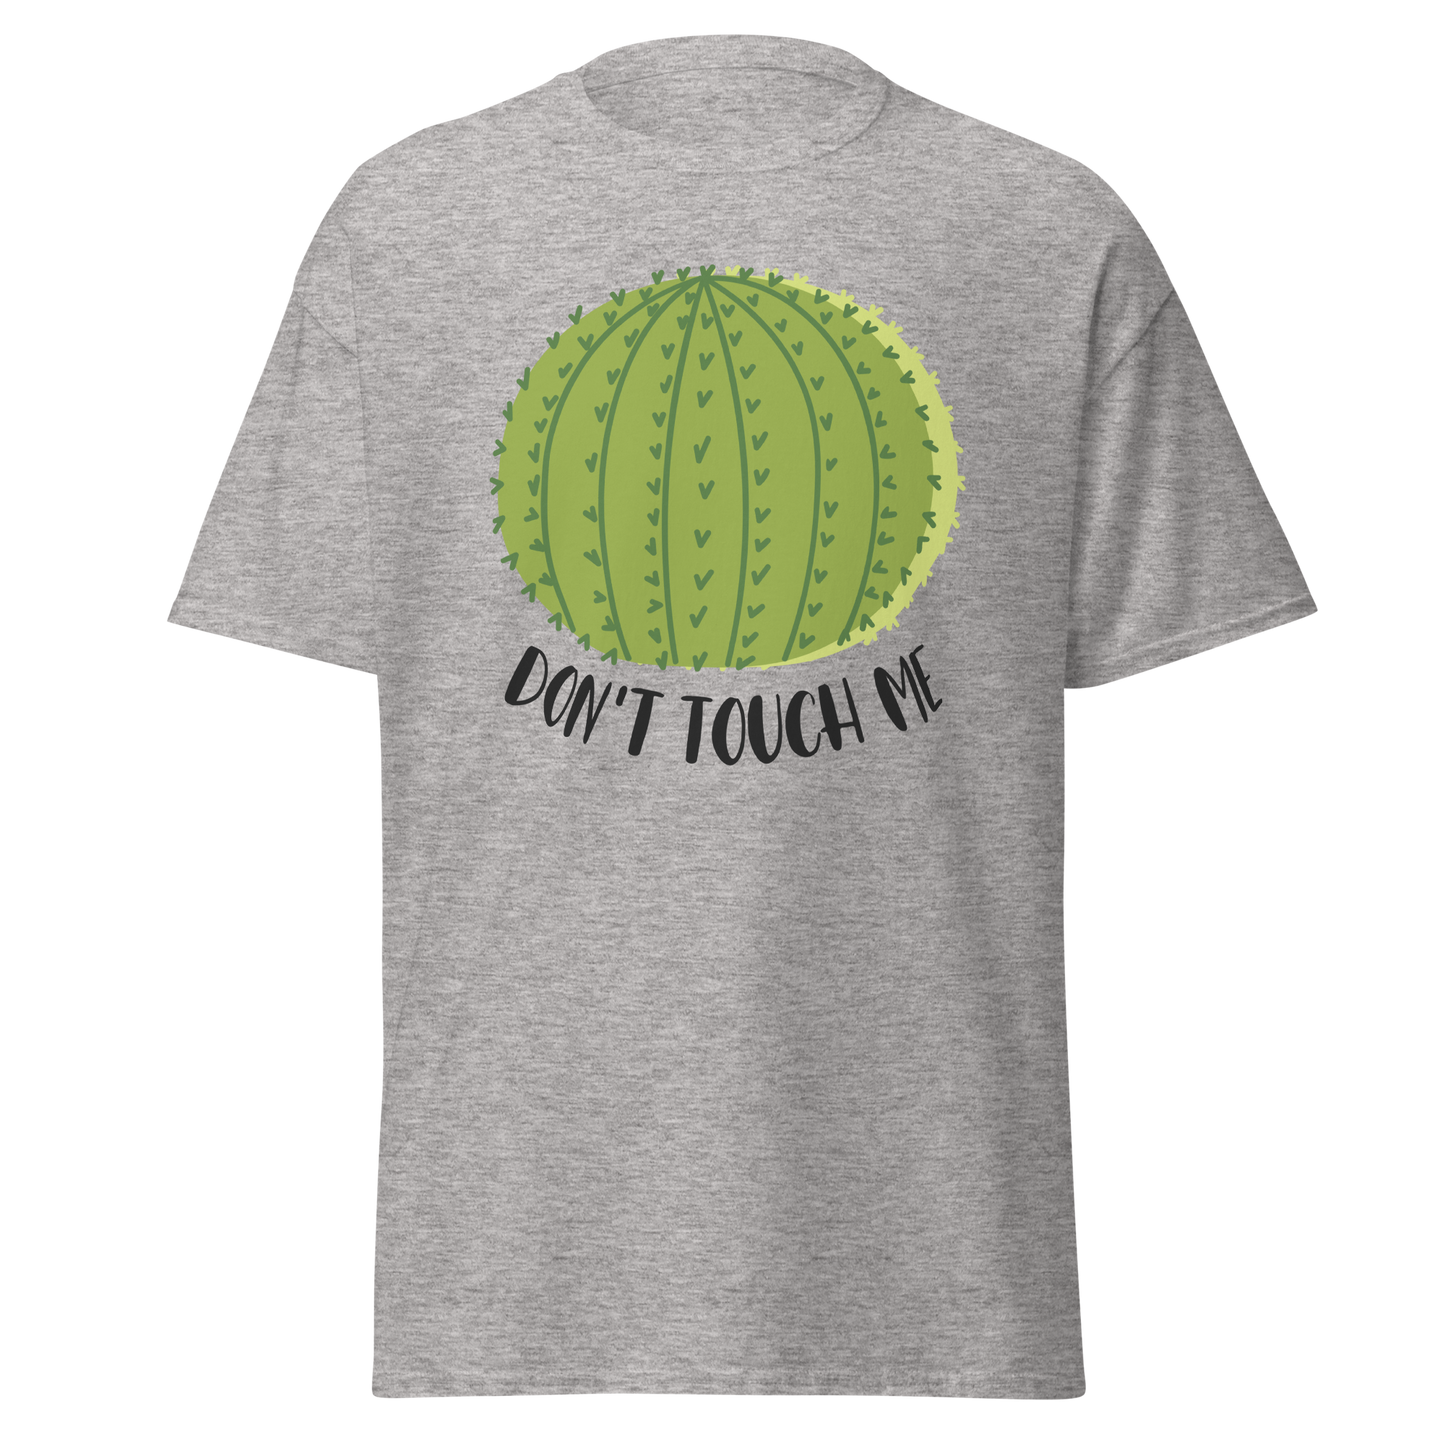 Camiseta "Don't touch me"